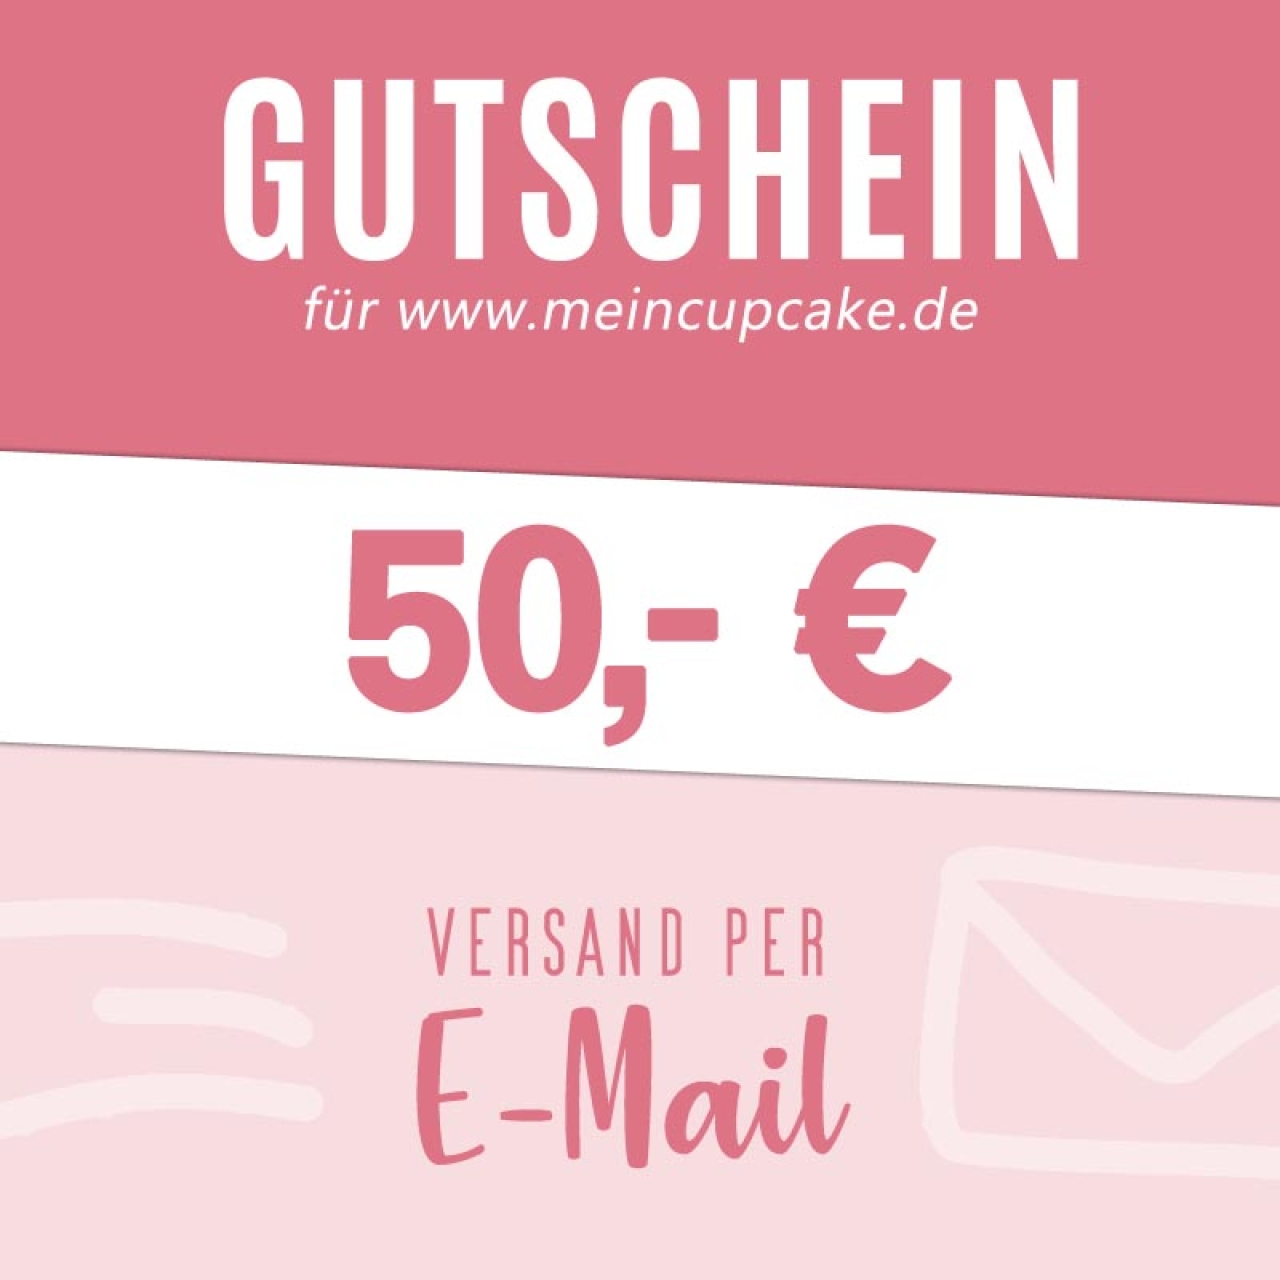 Gutschein 50 EUR als Email für meincupcake.de